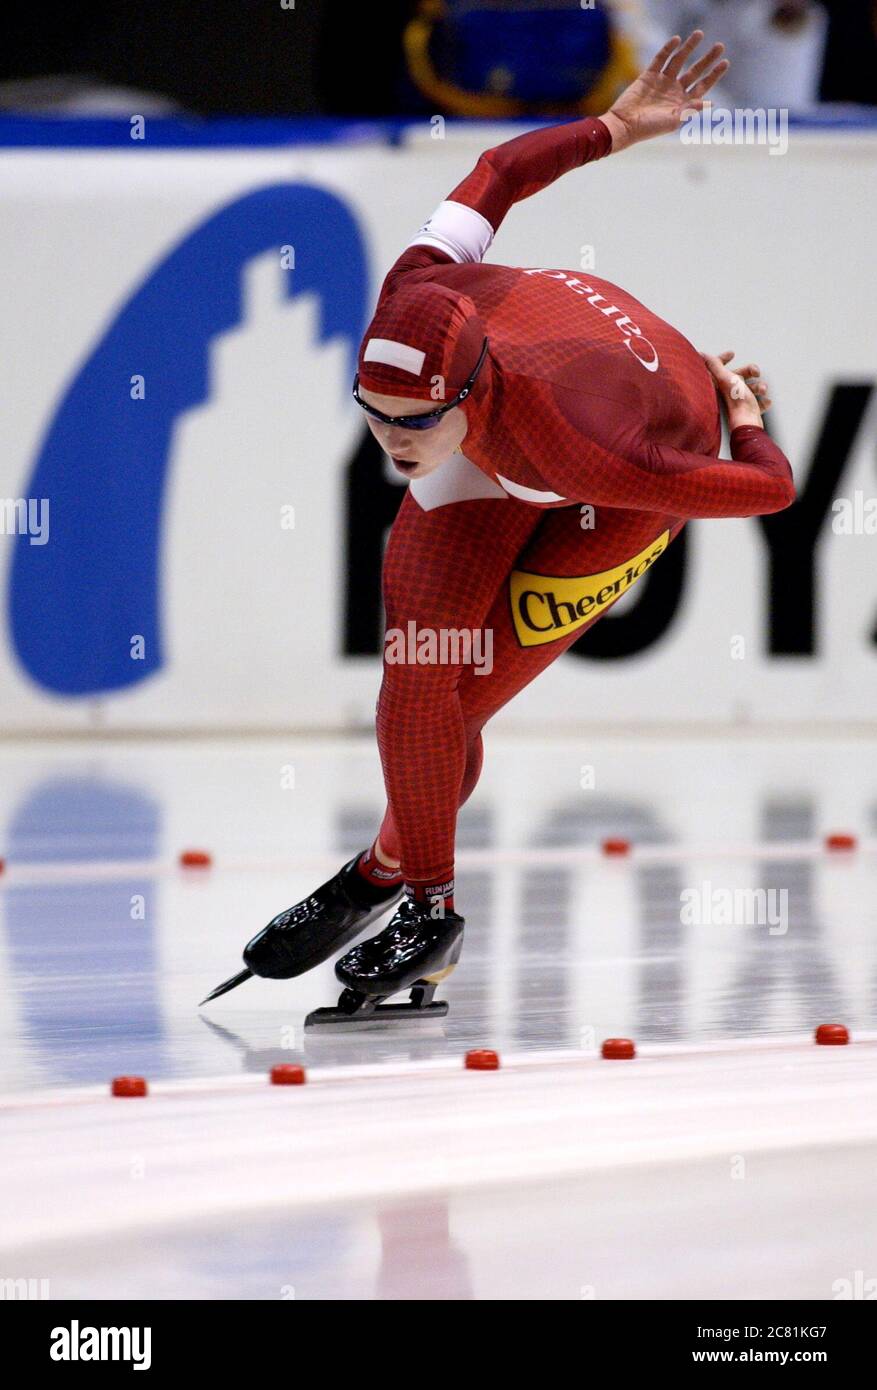 Heerenveen Netherlands 23/24.11.2002, Wintersport: Speed skating World Cup, Cindy Klassen (CAN) Stock Photo